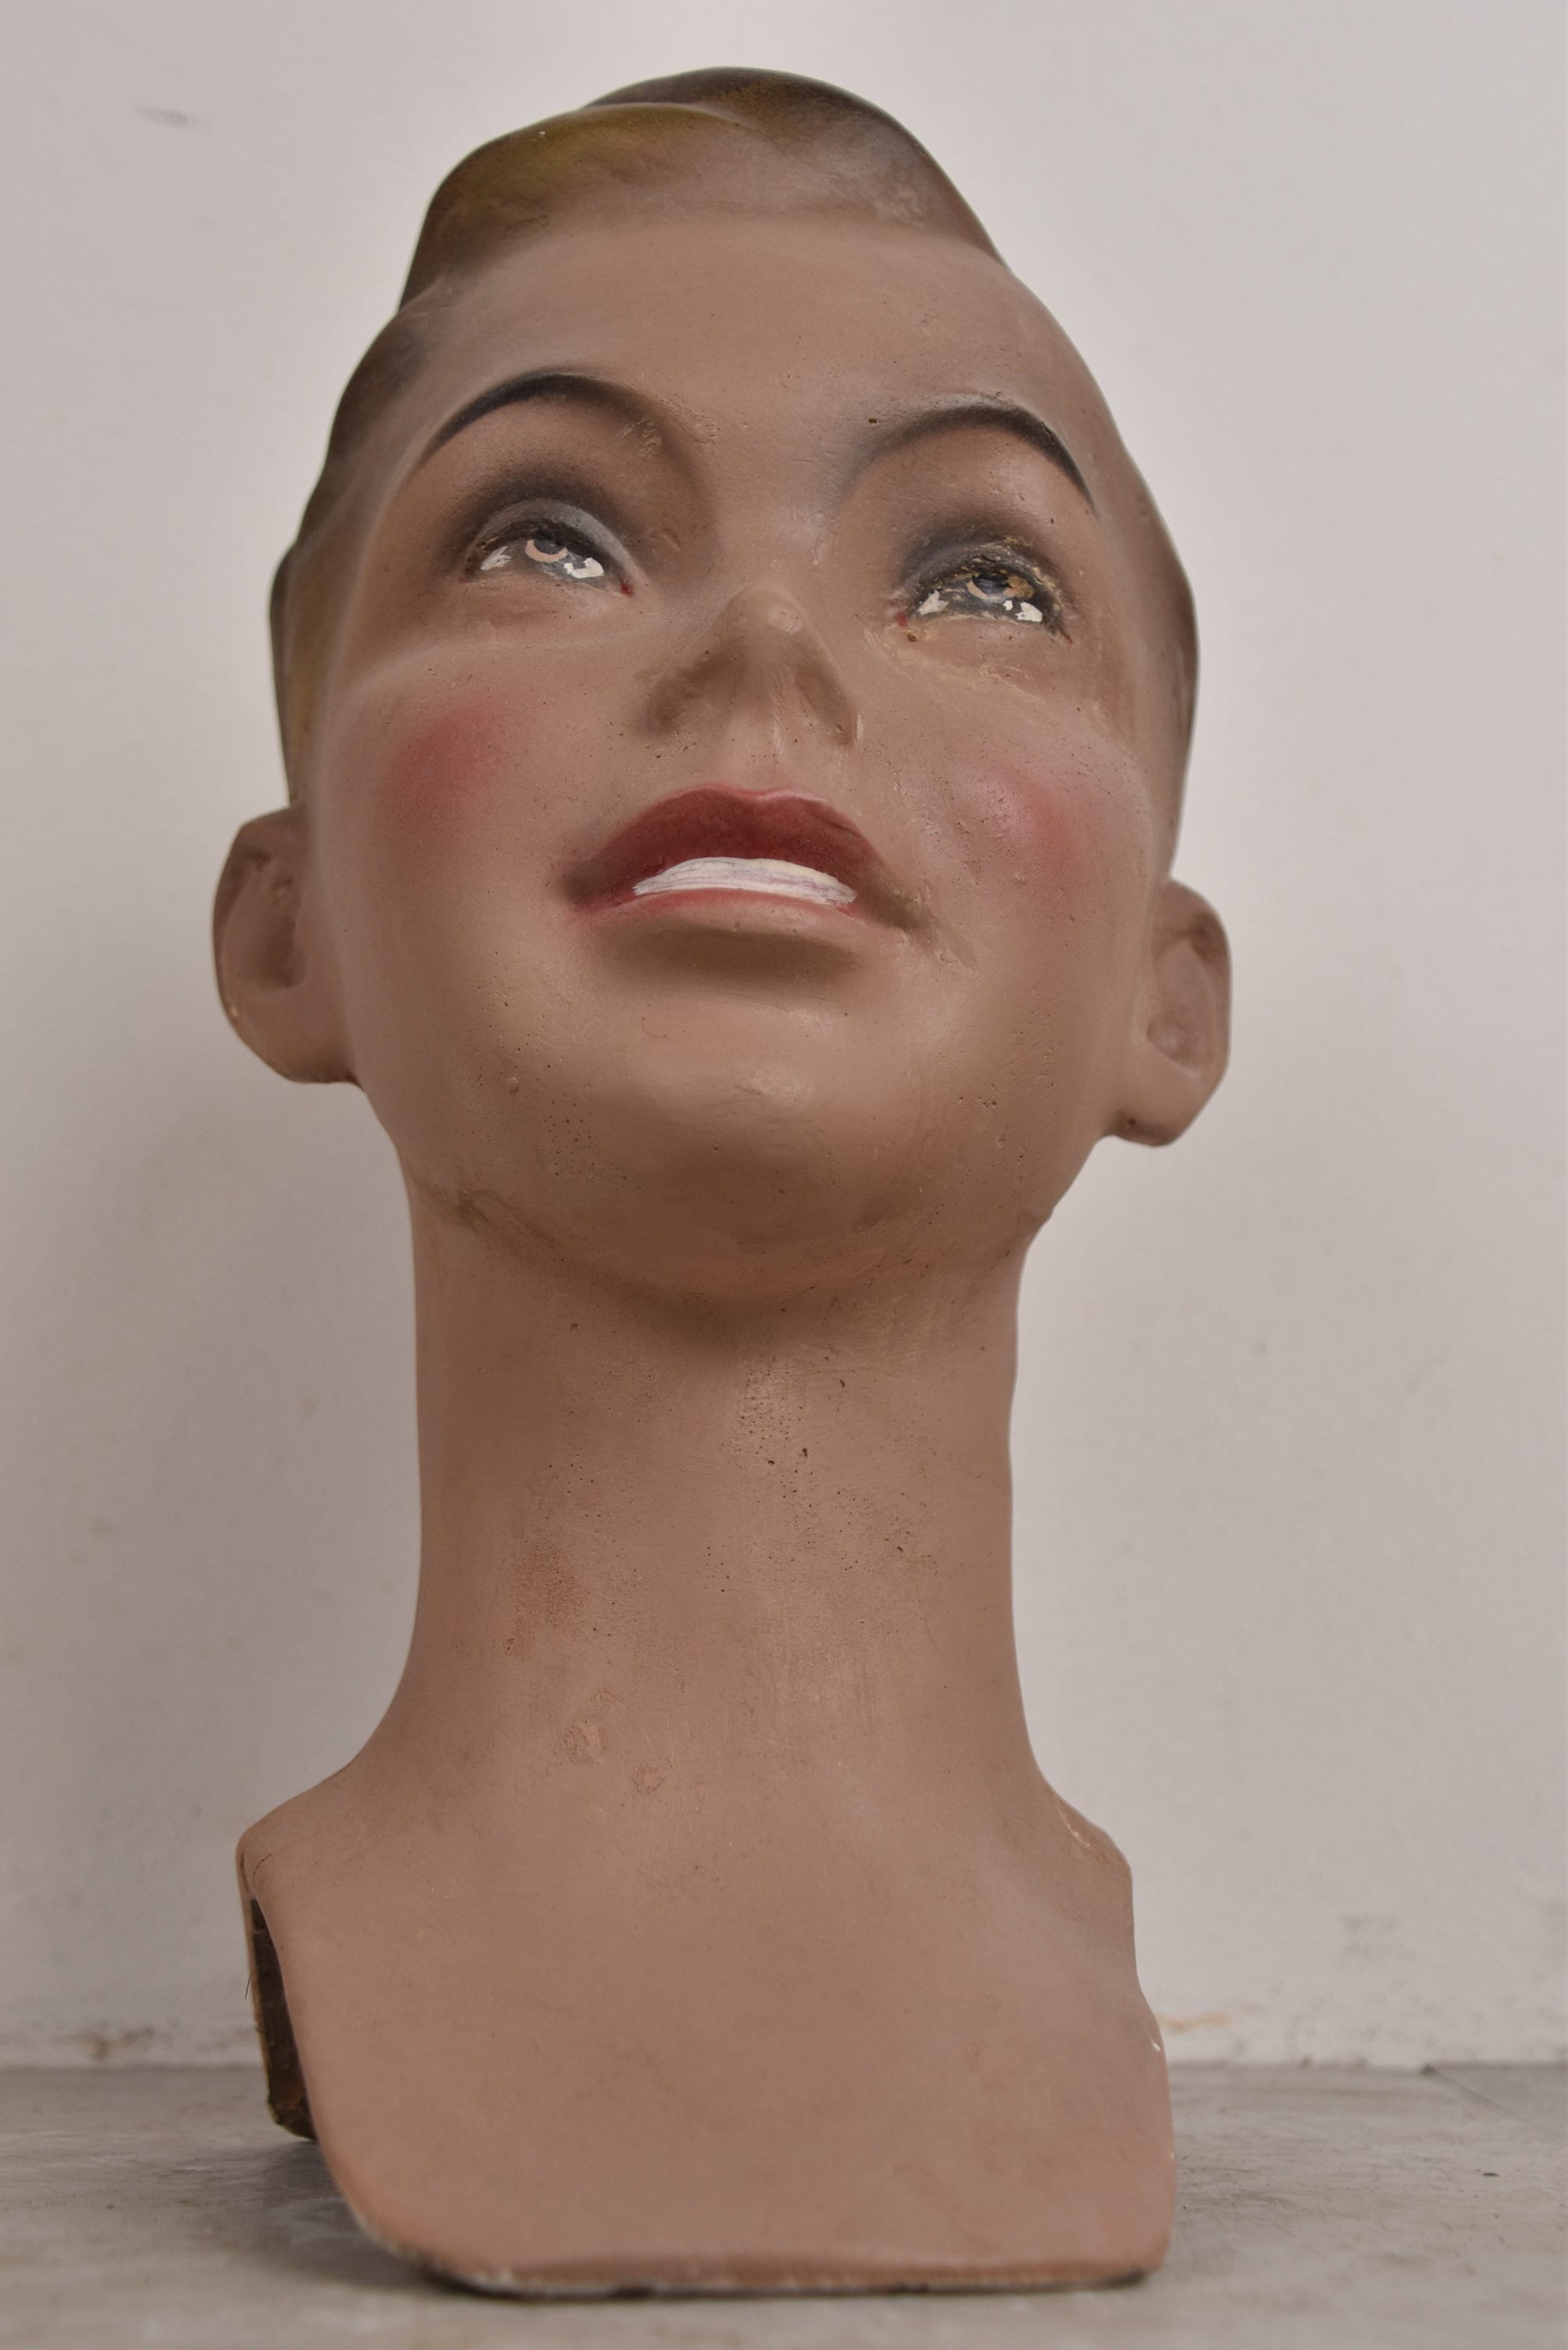 1930's Male Head of Mannequin Man Vintage Design Face Art Deco